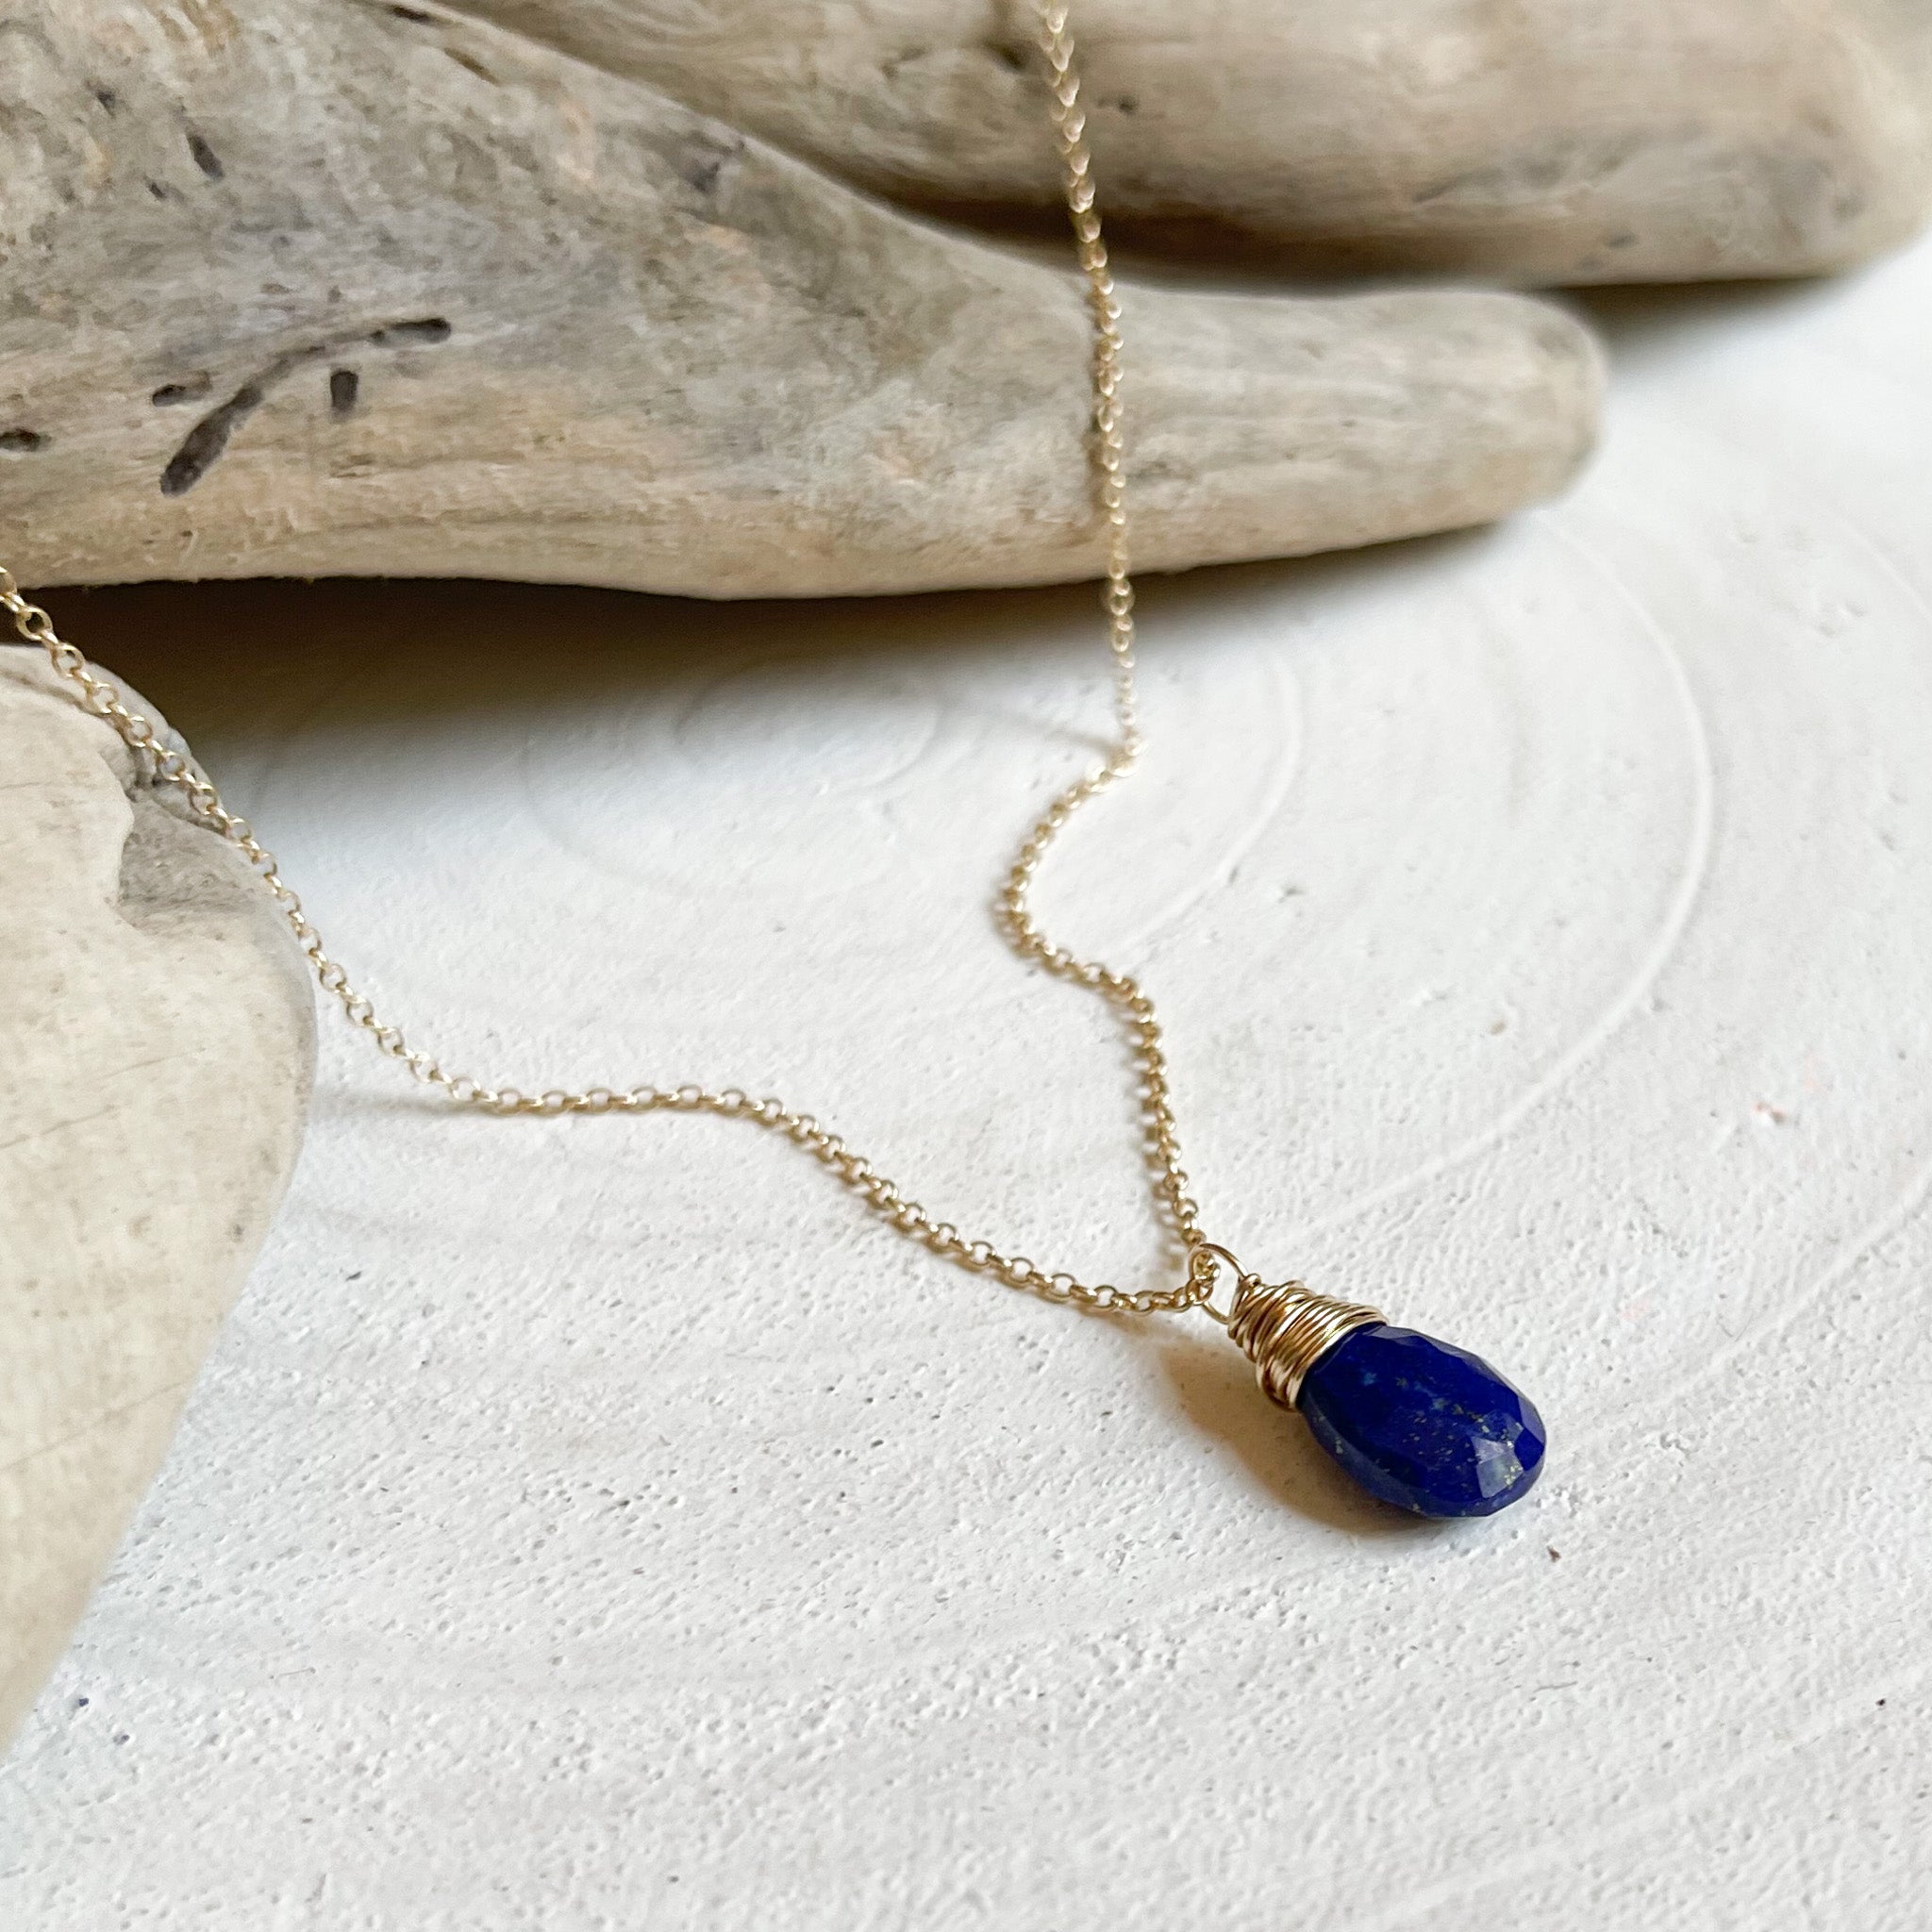 Lapis Lazuli Gold Pendant Necklace, Lapis Jewerly, Blue Gemstone Necklace